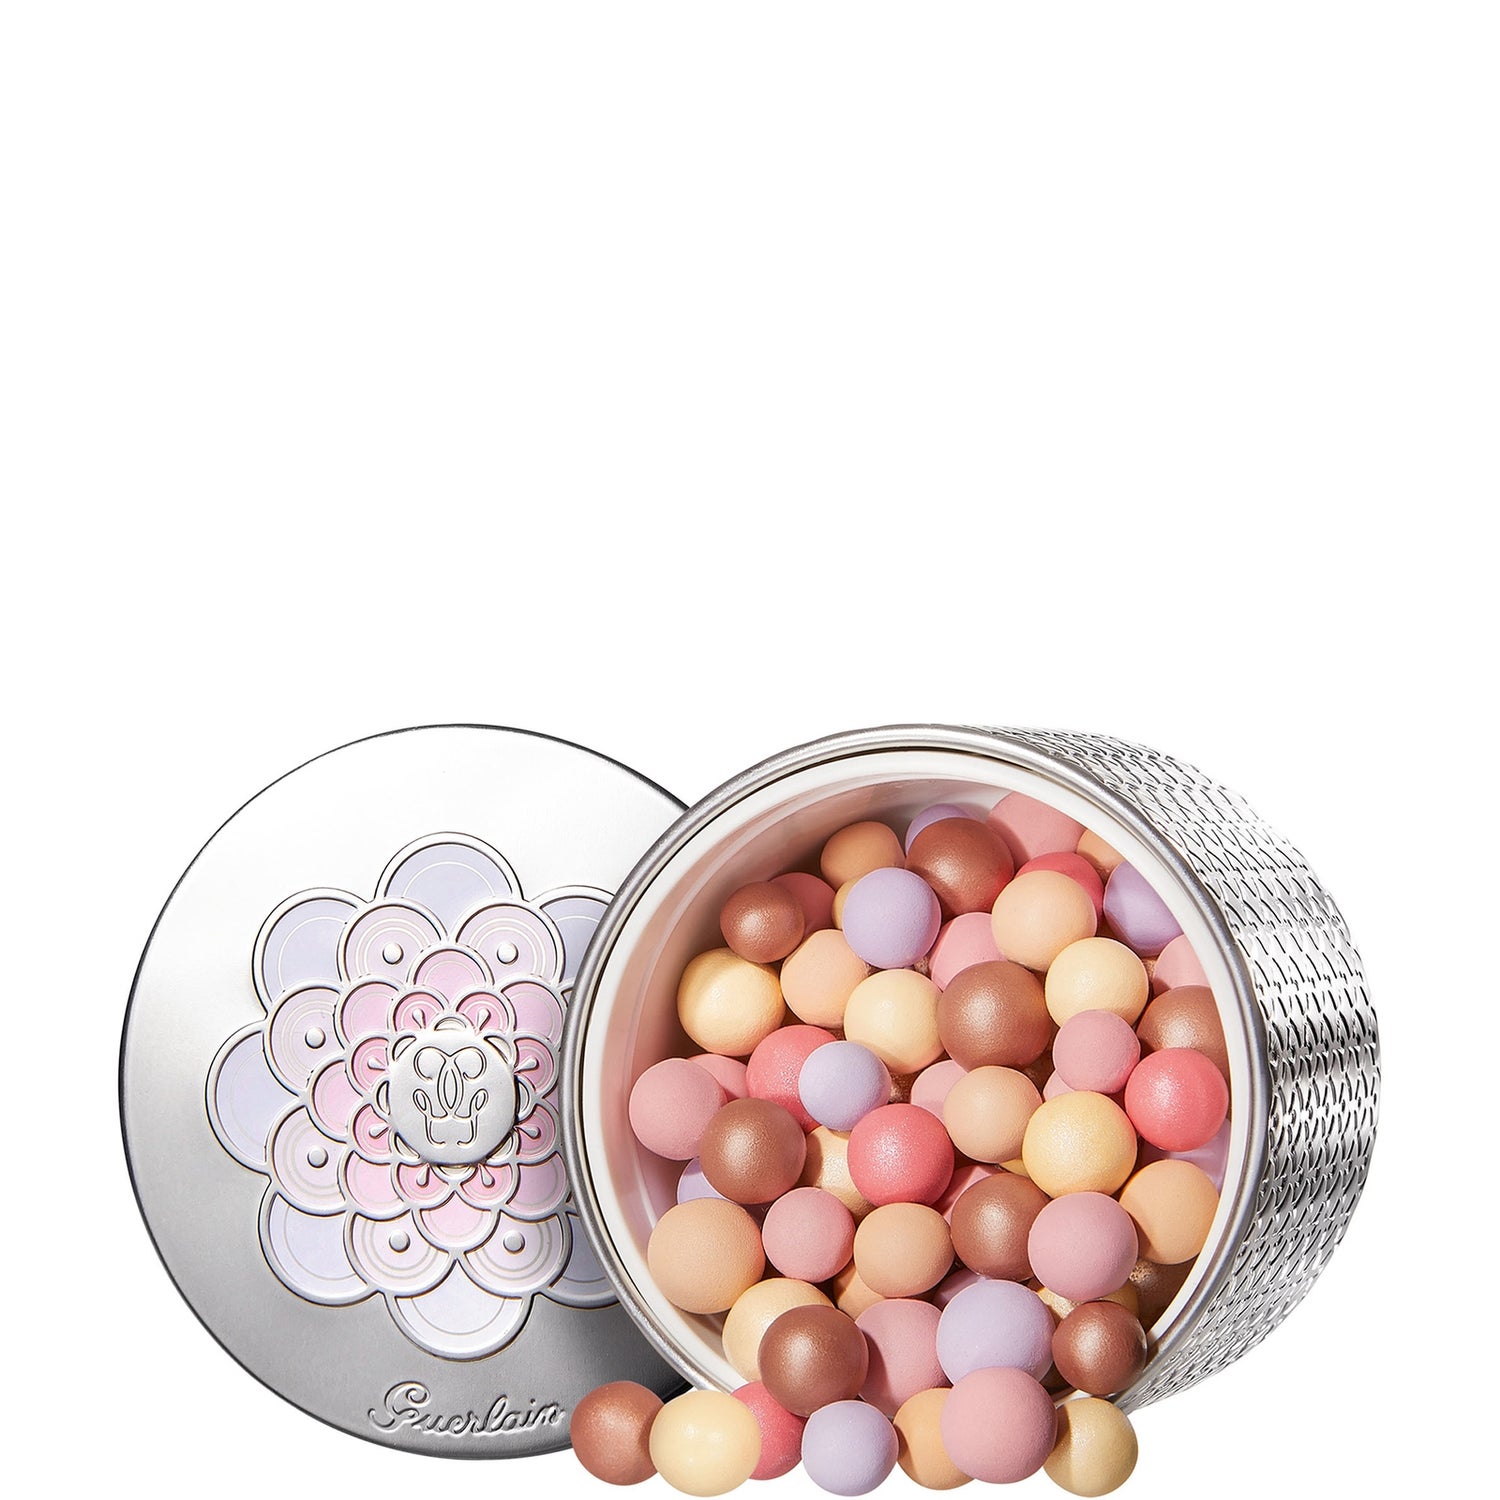 Guerlain Météorites Light Revealing Pearls Of Powder 25g (Various Shades)